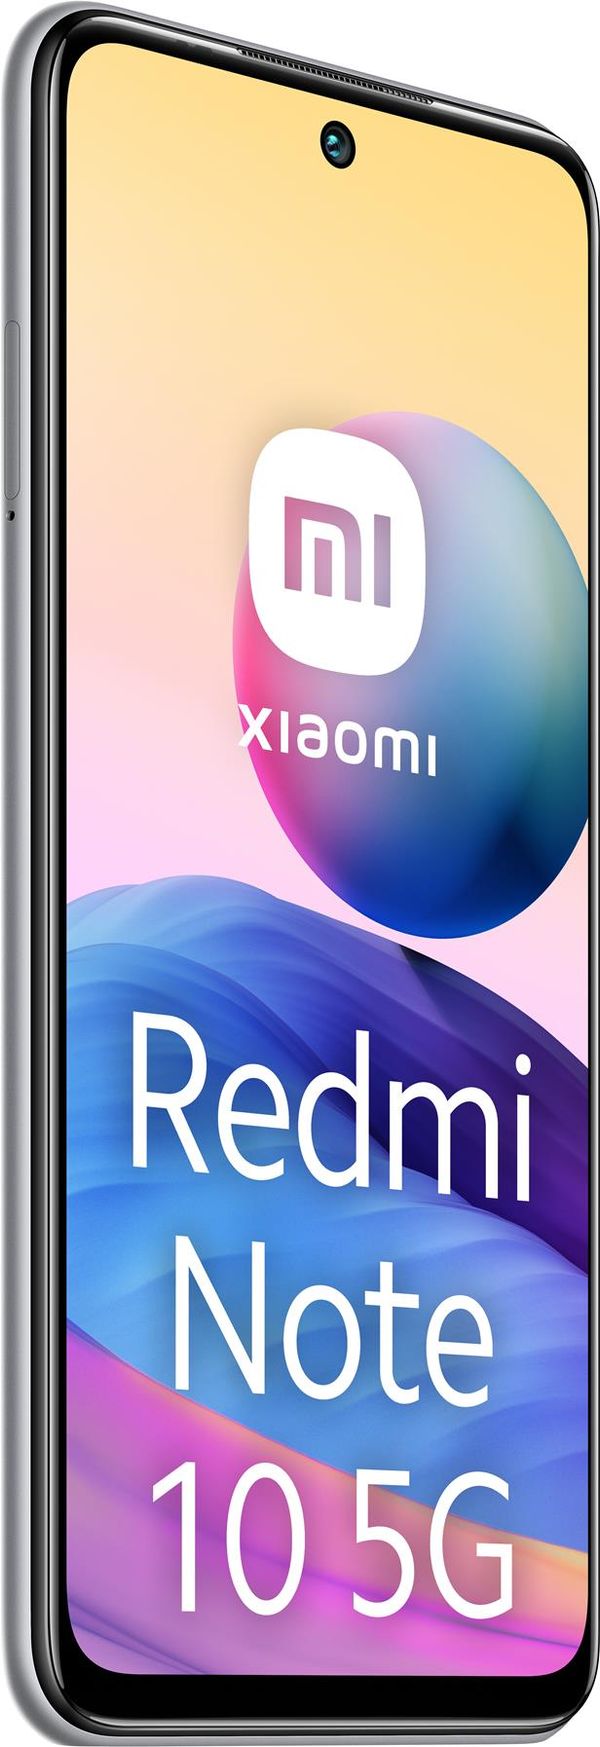 RE-9510K19Y0004-PQ smartphone reacondicionado xiaomi redmi note 10 5g 4gb ram 128gb rom silver grado a